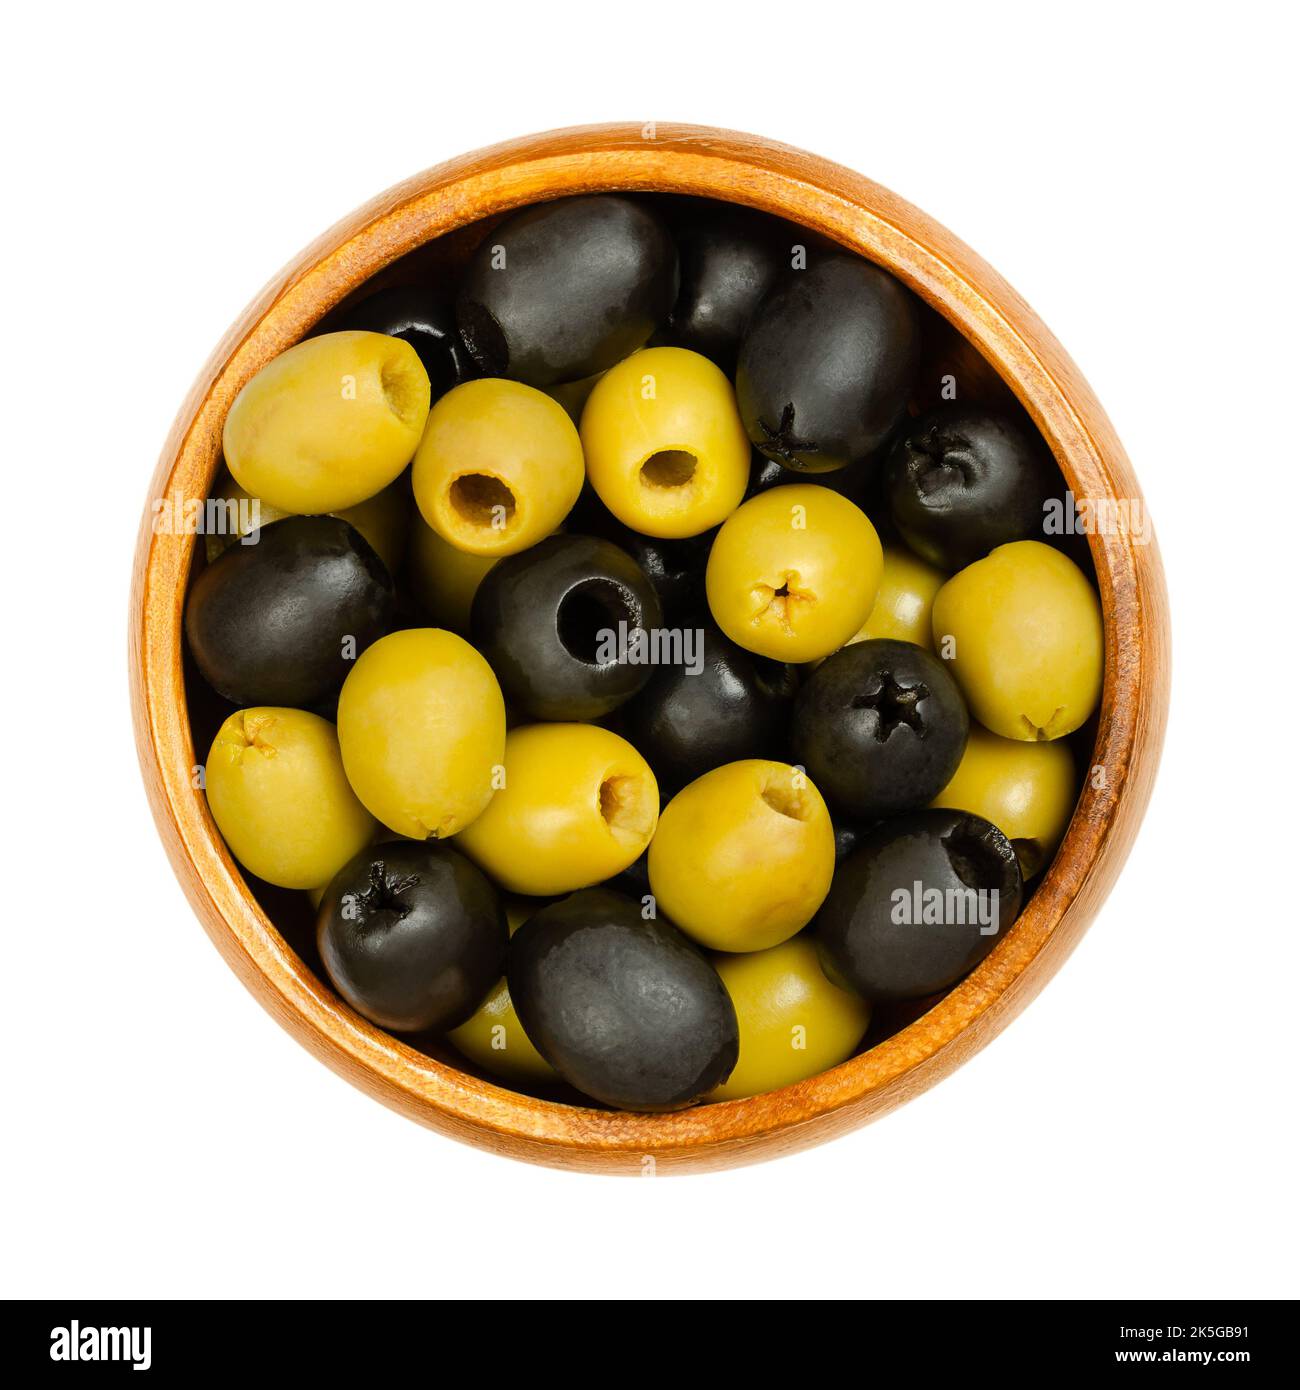 Olives vertes et noires dénoyautées, Hojiblanca, dans un bol en bois. Olives européennes, Olea europaea. Olives de table populaires à faible teneur en huile. Banque D'Images